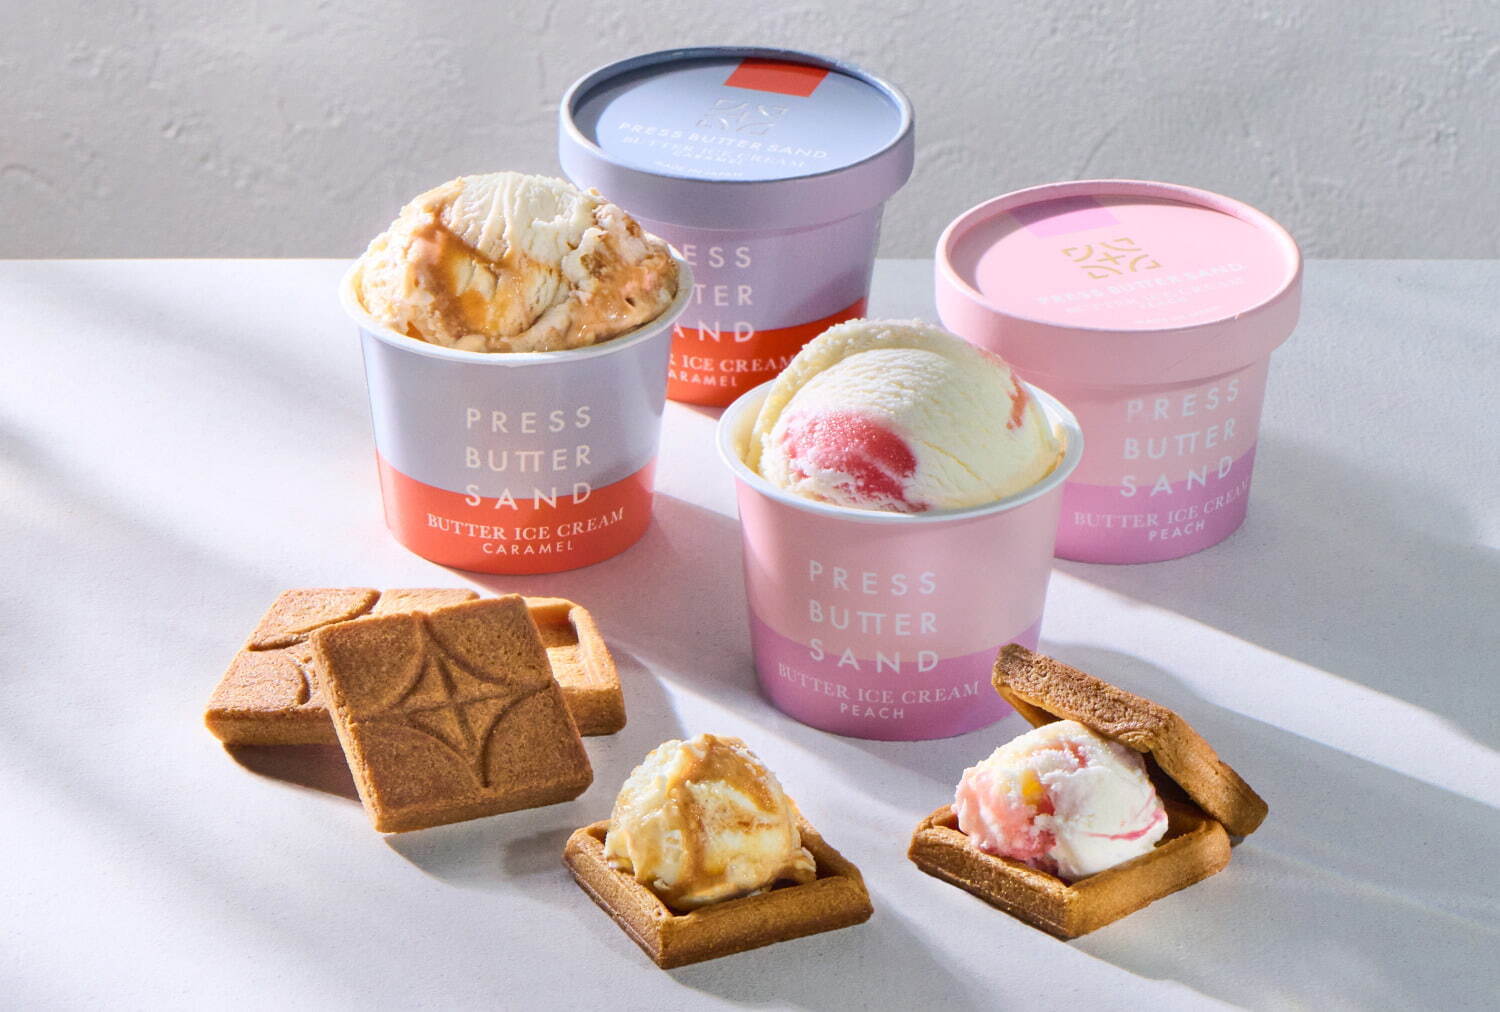 バターアイスクリーム〈桃・キャラメル〉・クッキーセット(保冷バッグ付) 1,188円